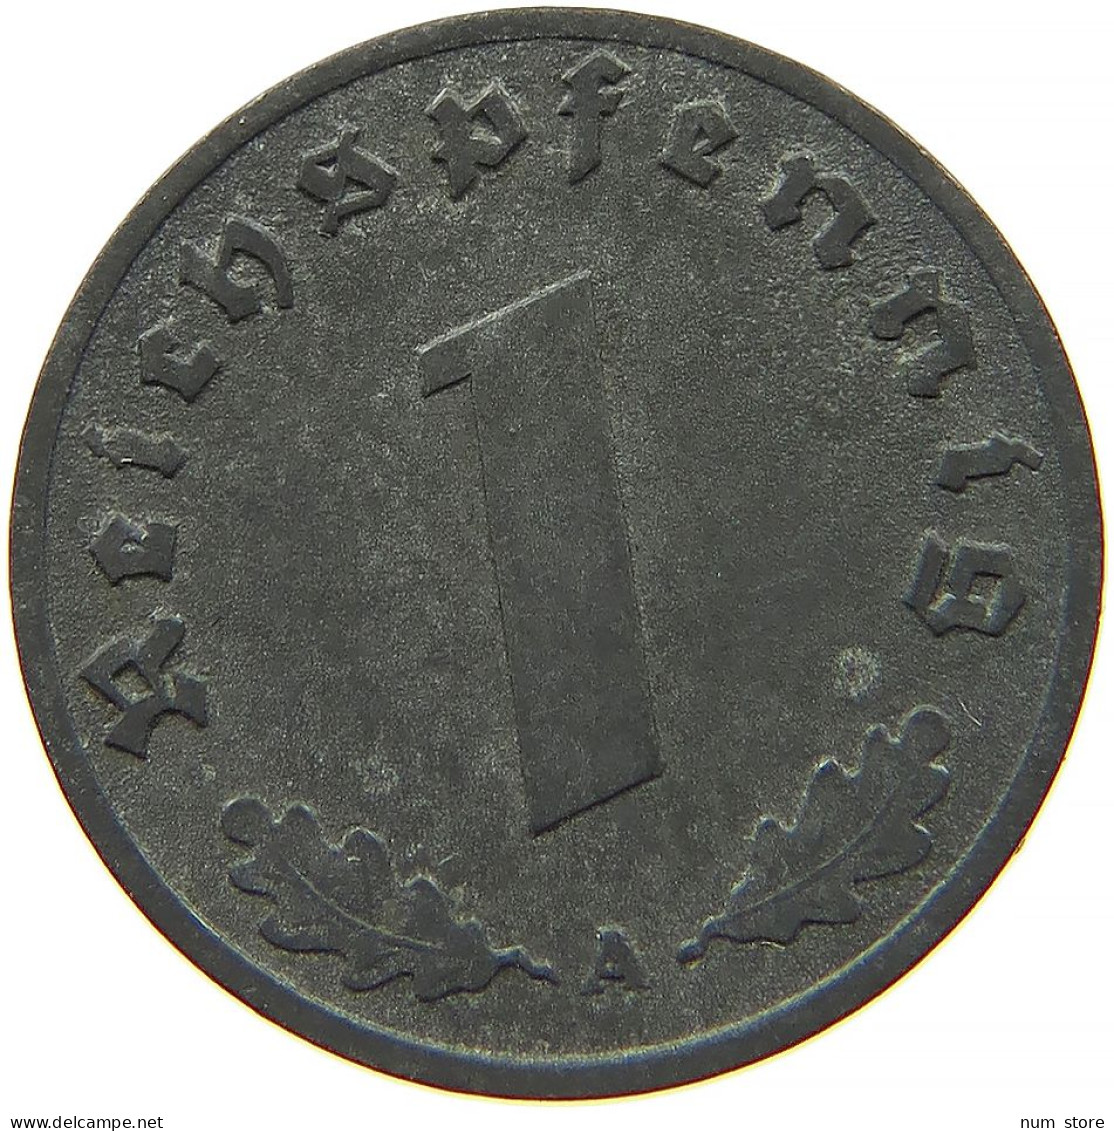 GERMANY 1 REICHSPFENNIG 1942 A #s091 1097 - 1 Reichspfennig